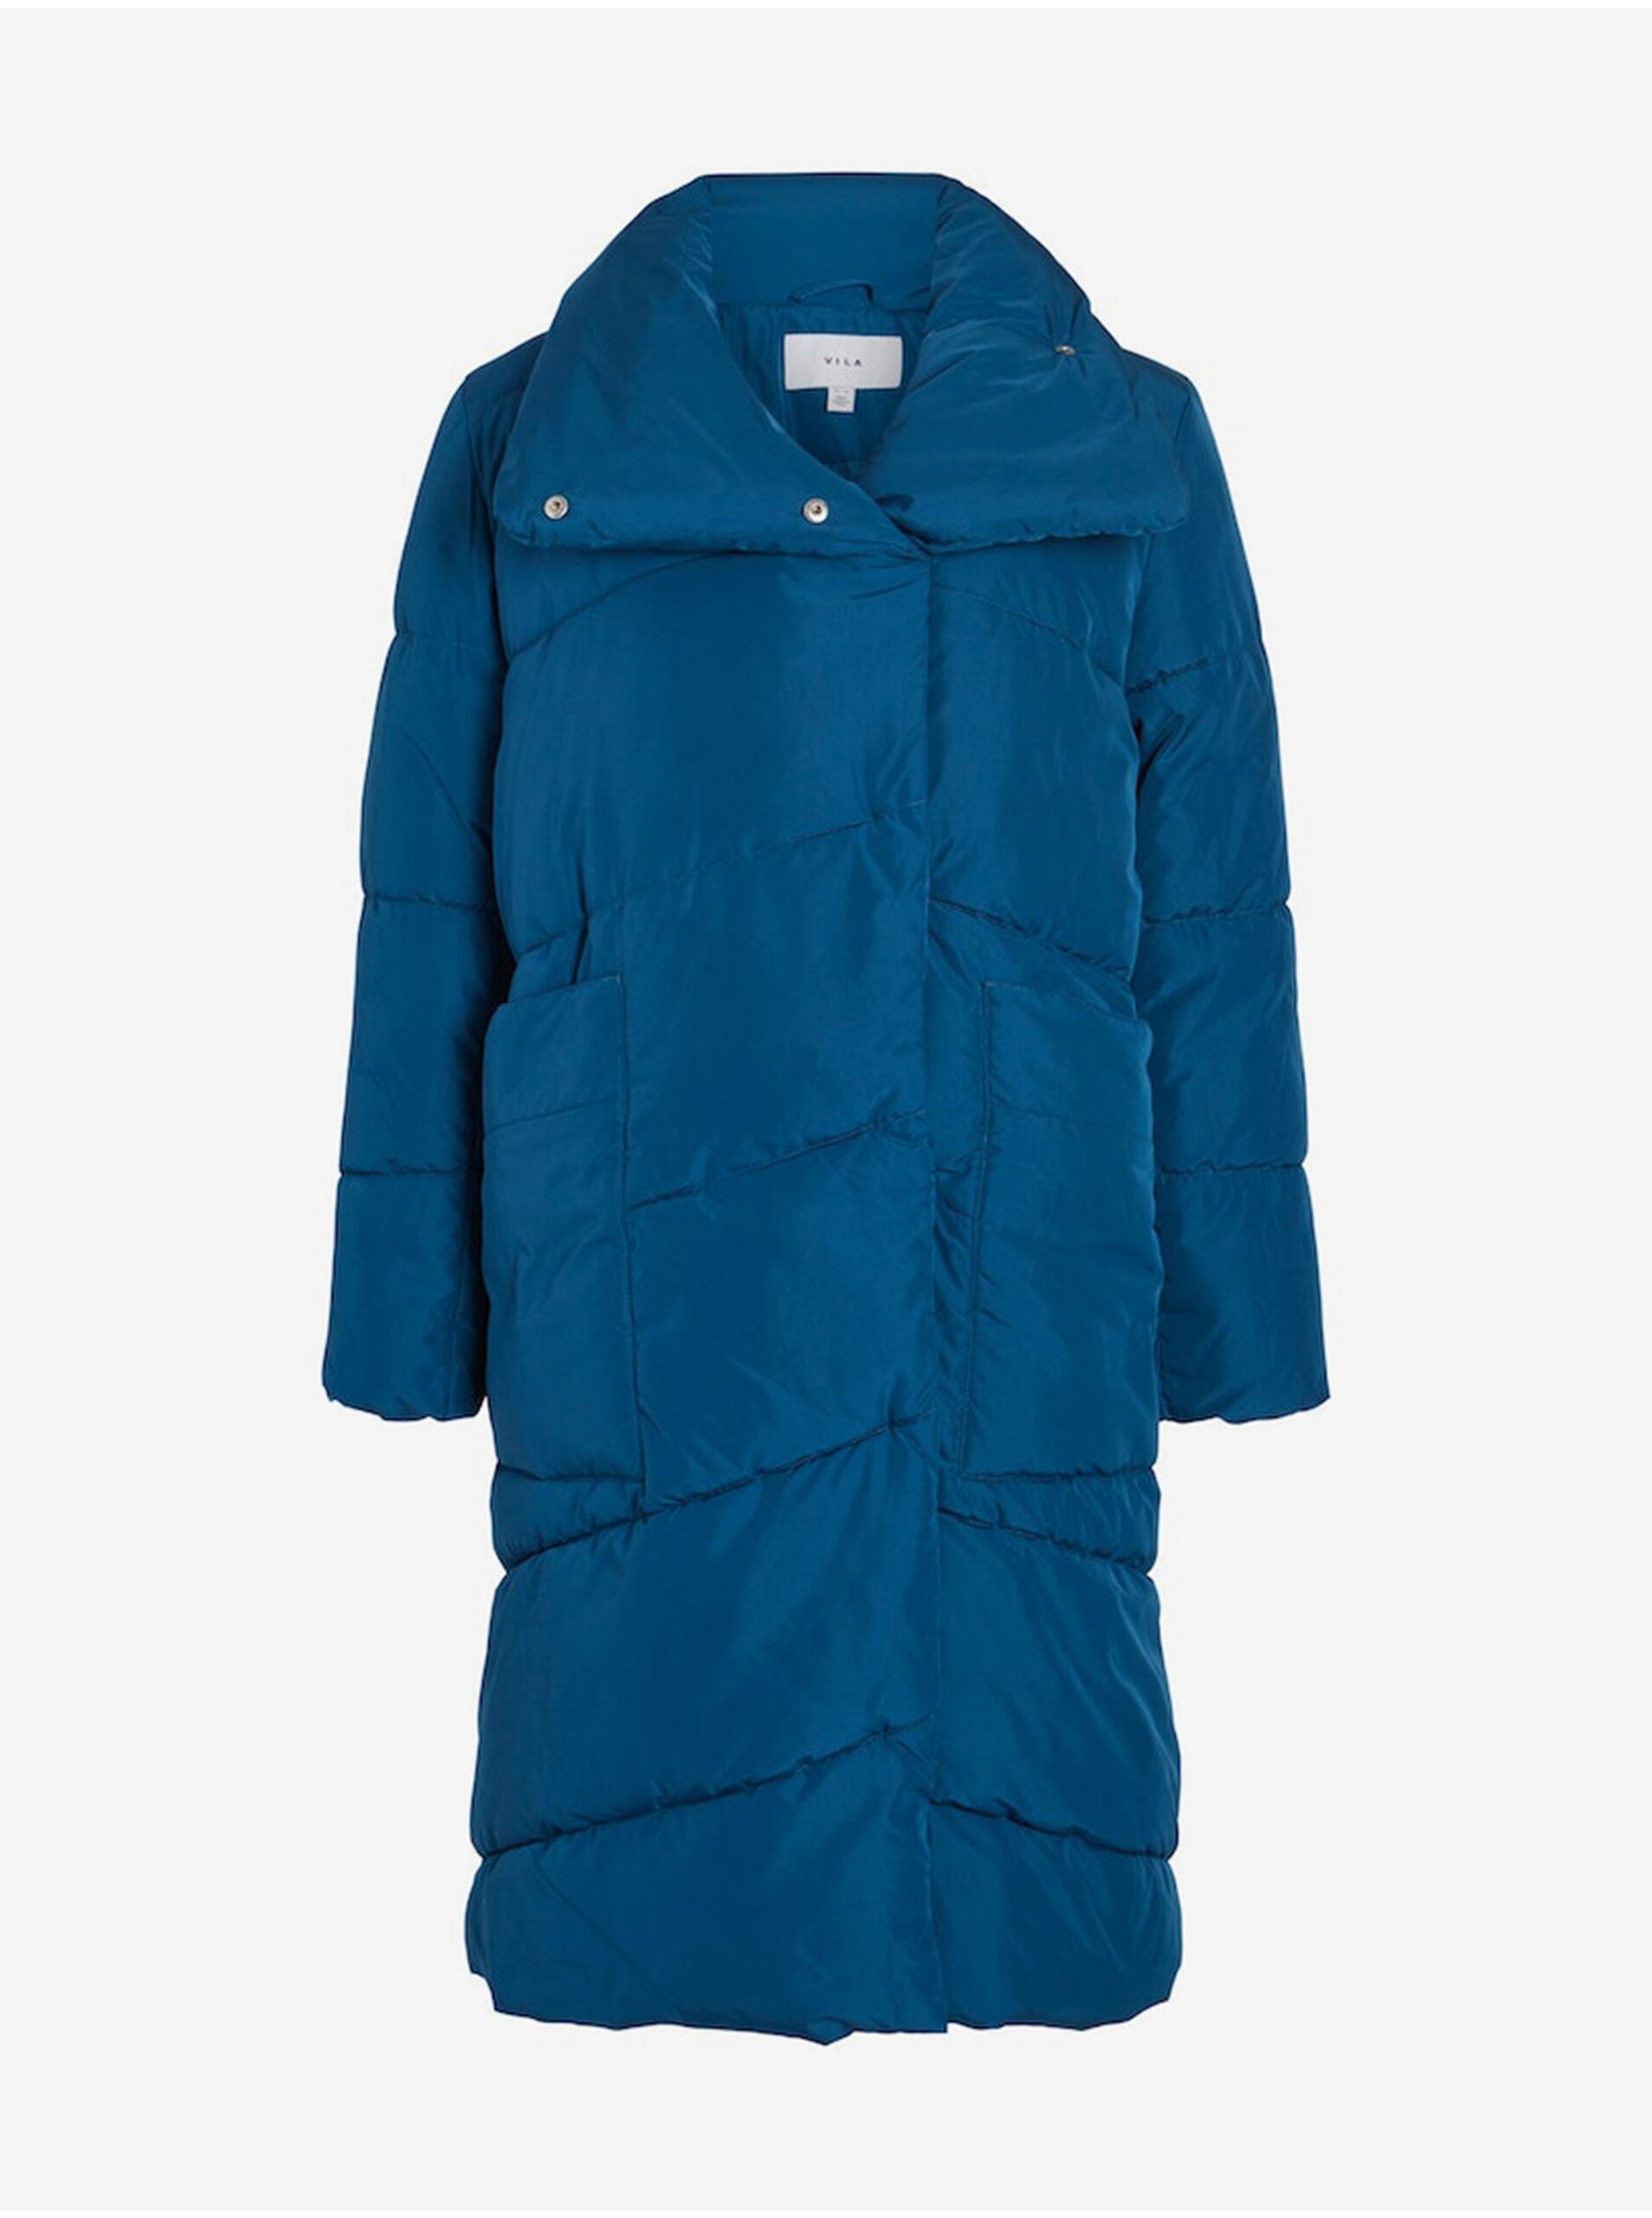 Lacno Modrý dámsky zimný prešívaný kabát VILA Vipauli